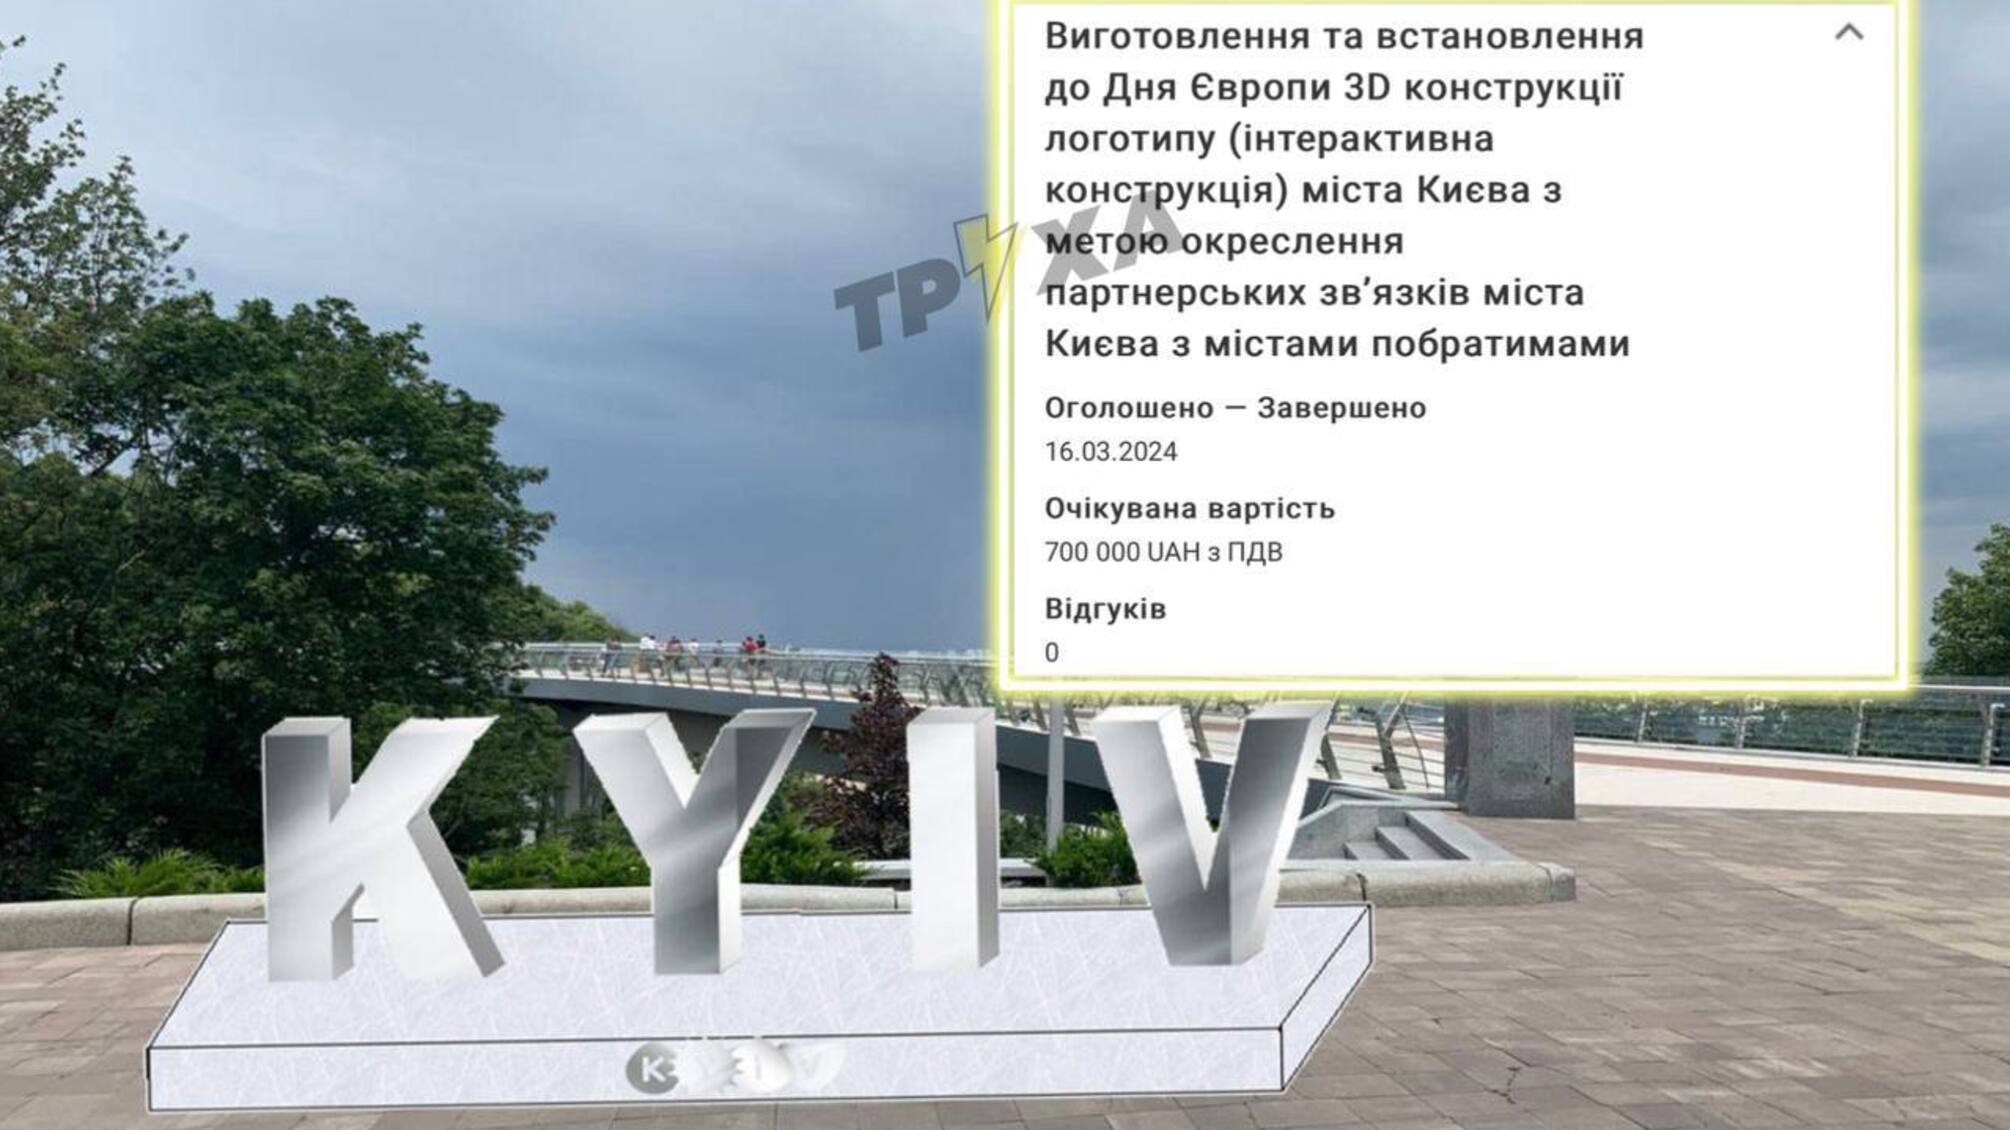 У Києві планують встановити 3D-конструкцію логотипу за 700 тис. грн